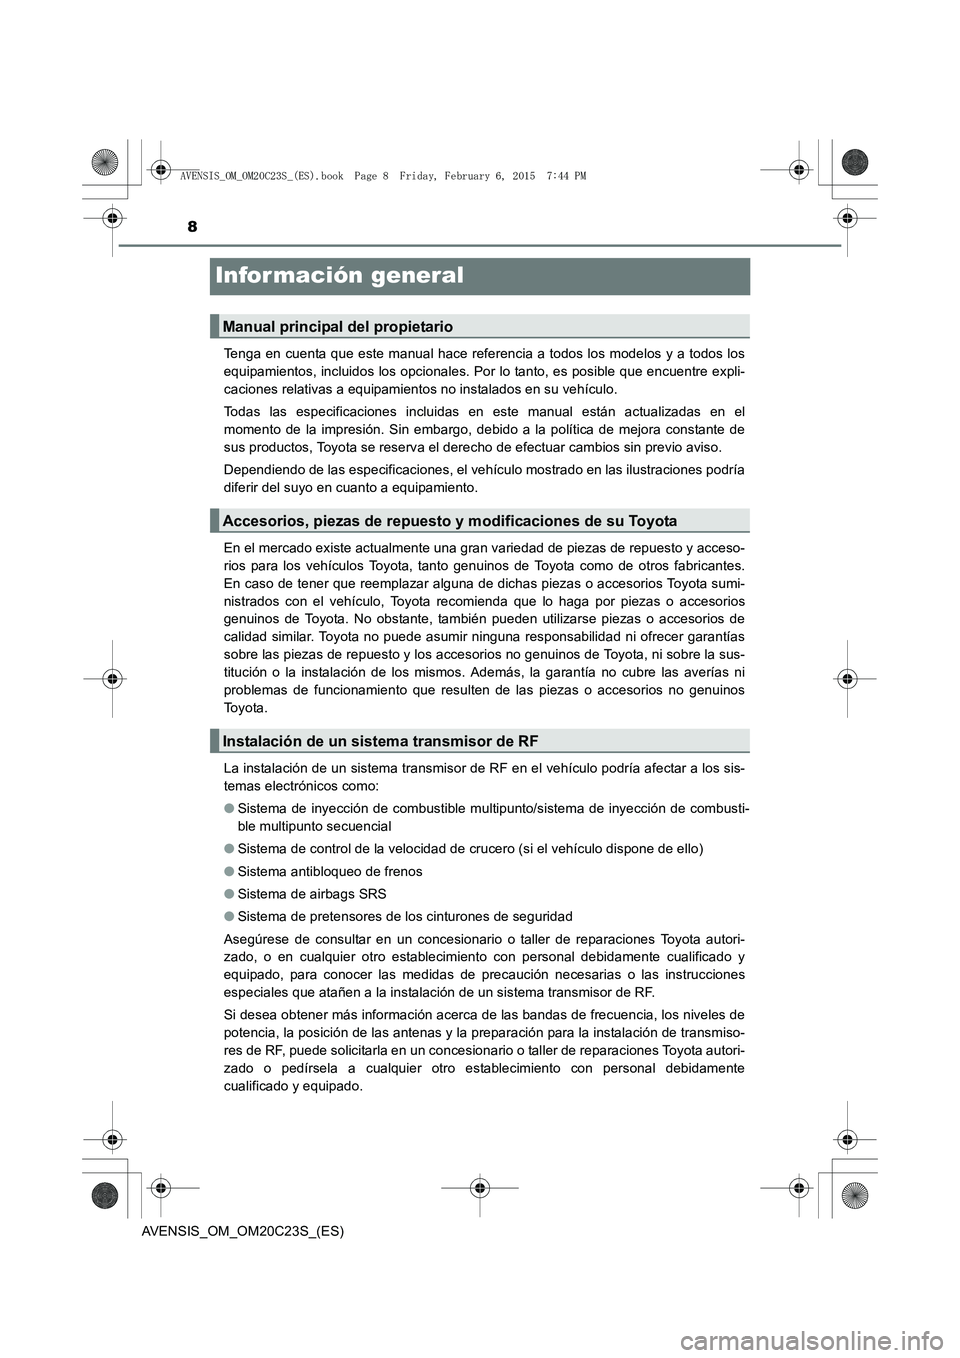 TOYOTA AVENSIS 2015  Manual del propietario (in Spanish) 8
AVENSIS_OM_OM20C23S_(ES)
Infor mación general
Tenga en cuenta que este manual hace referencia a todos los modelos y a todos los
equipamientos, incluidos los opcionales. Por lo tanto, es posible que